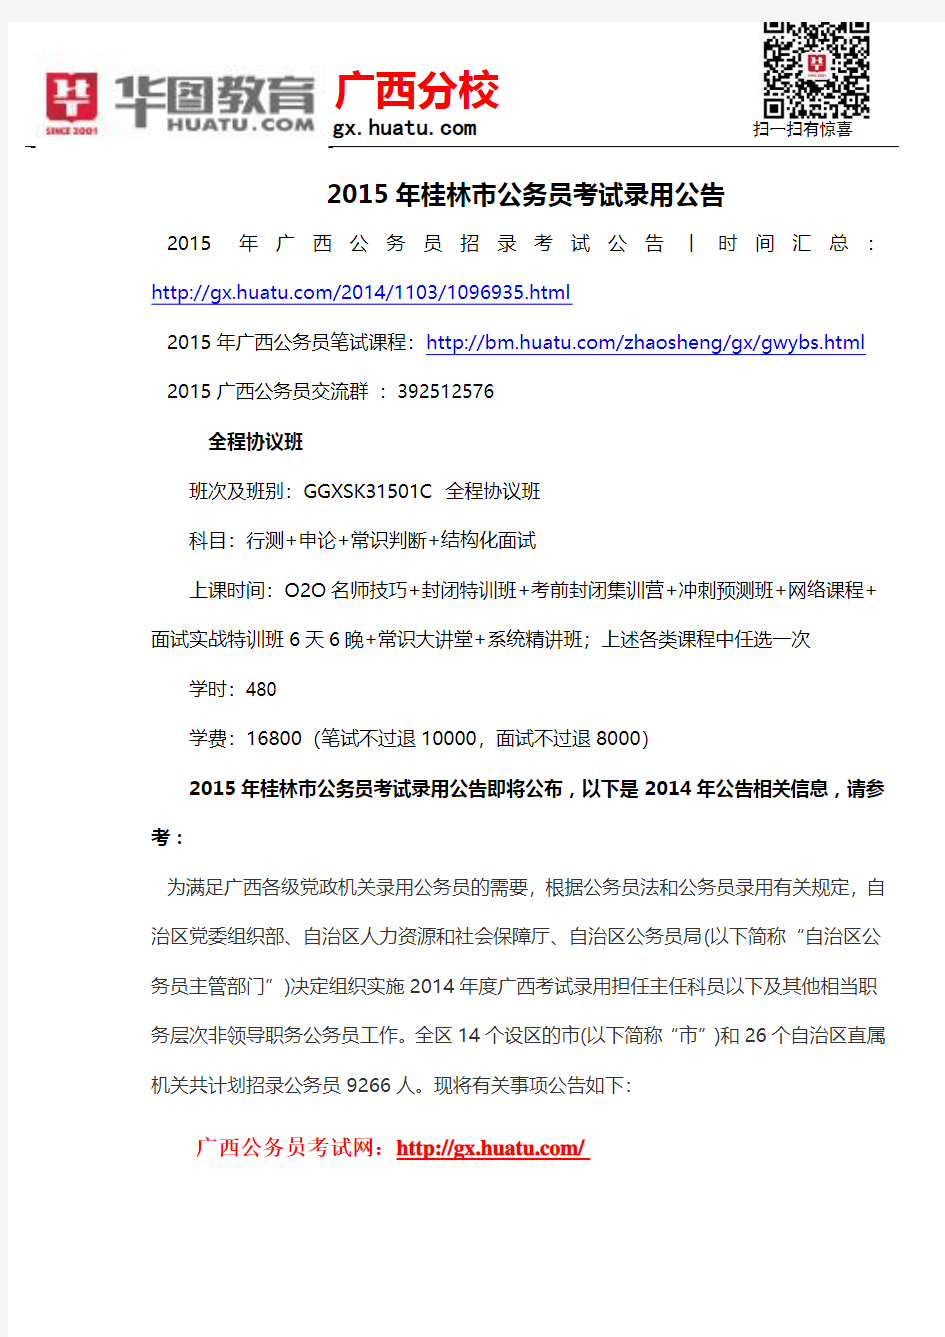 2015年桂林市公务员考试录用公告